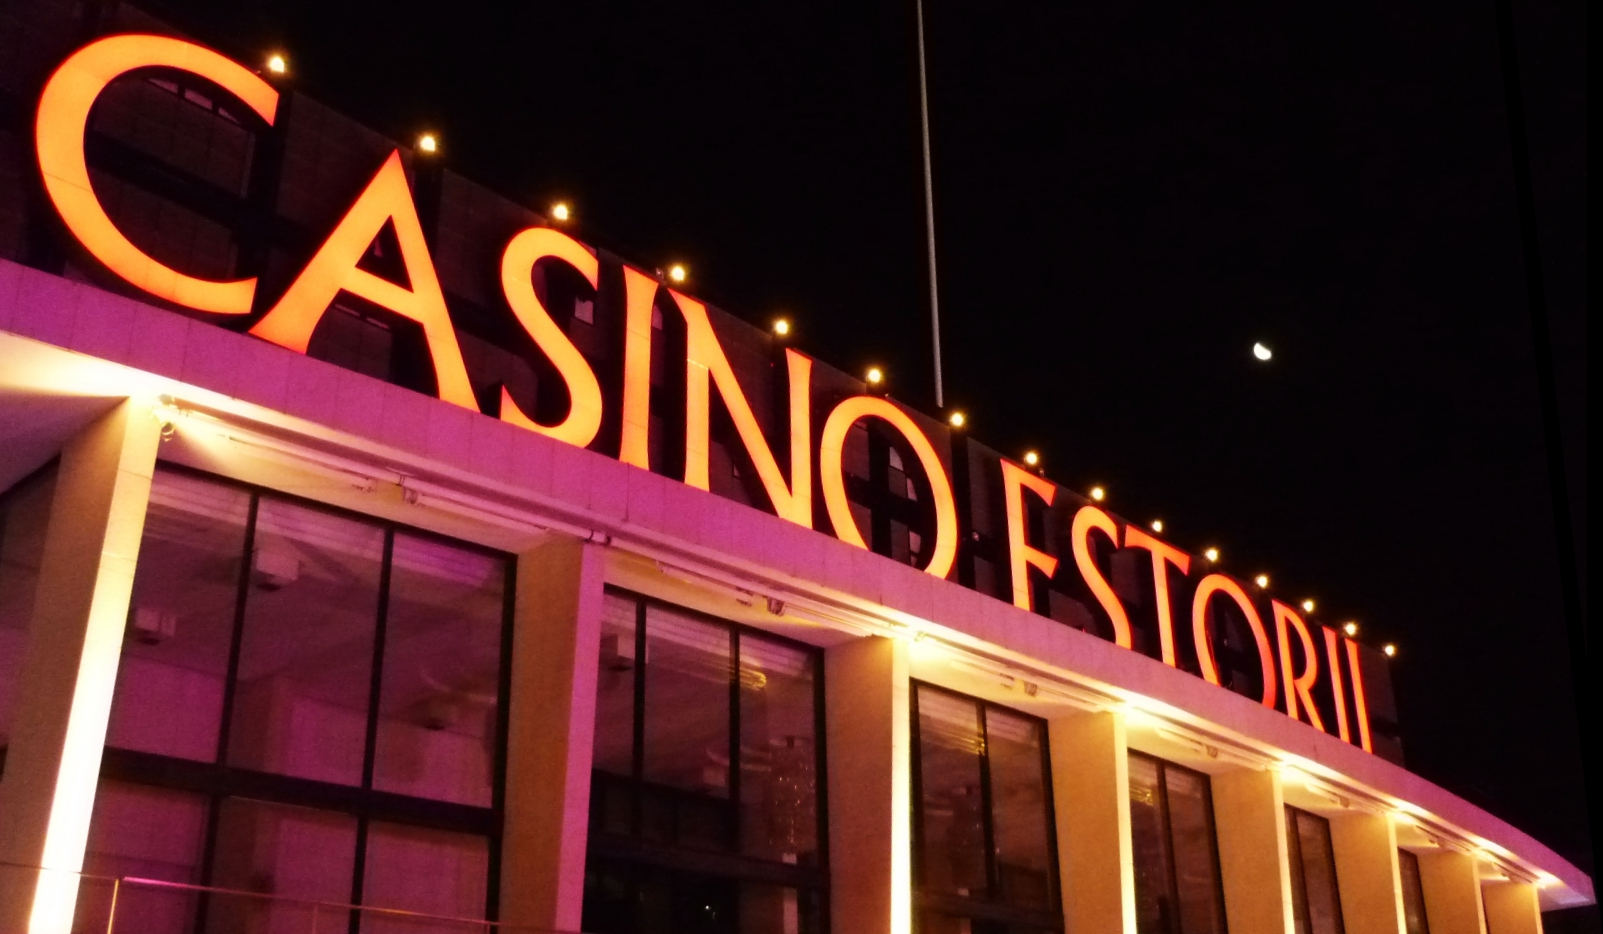  casino